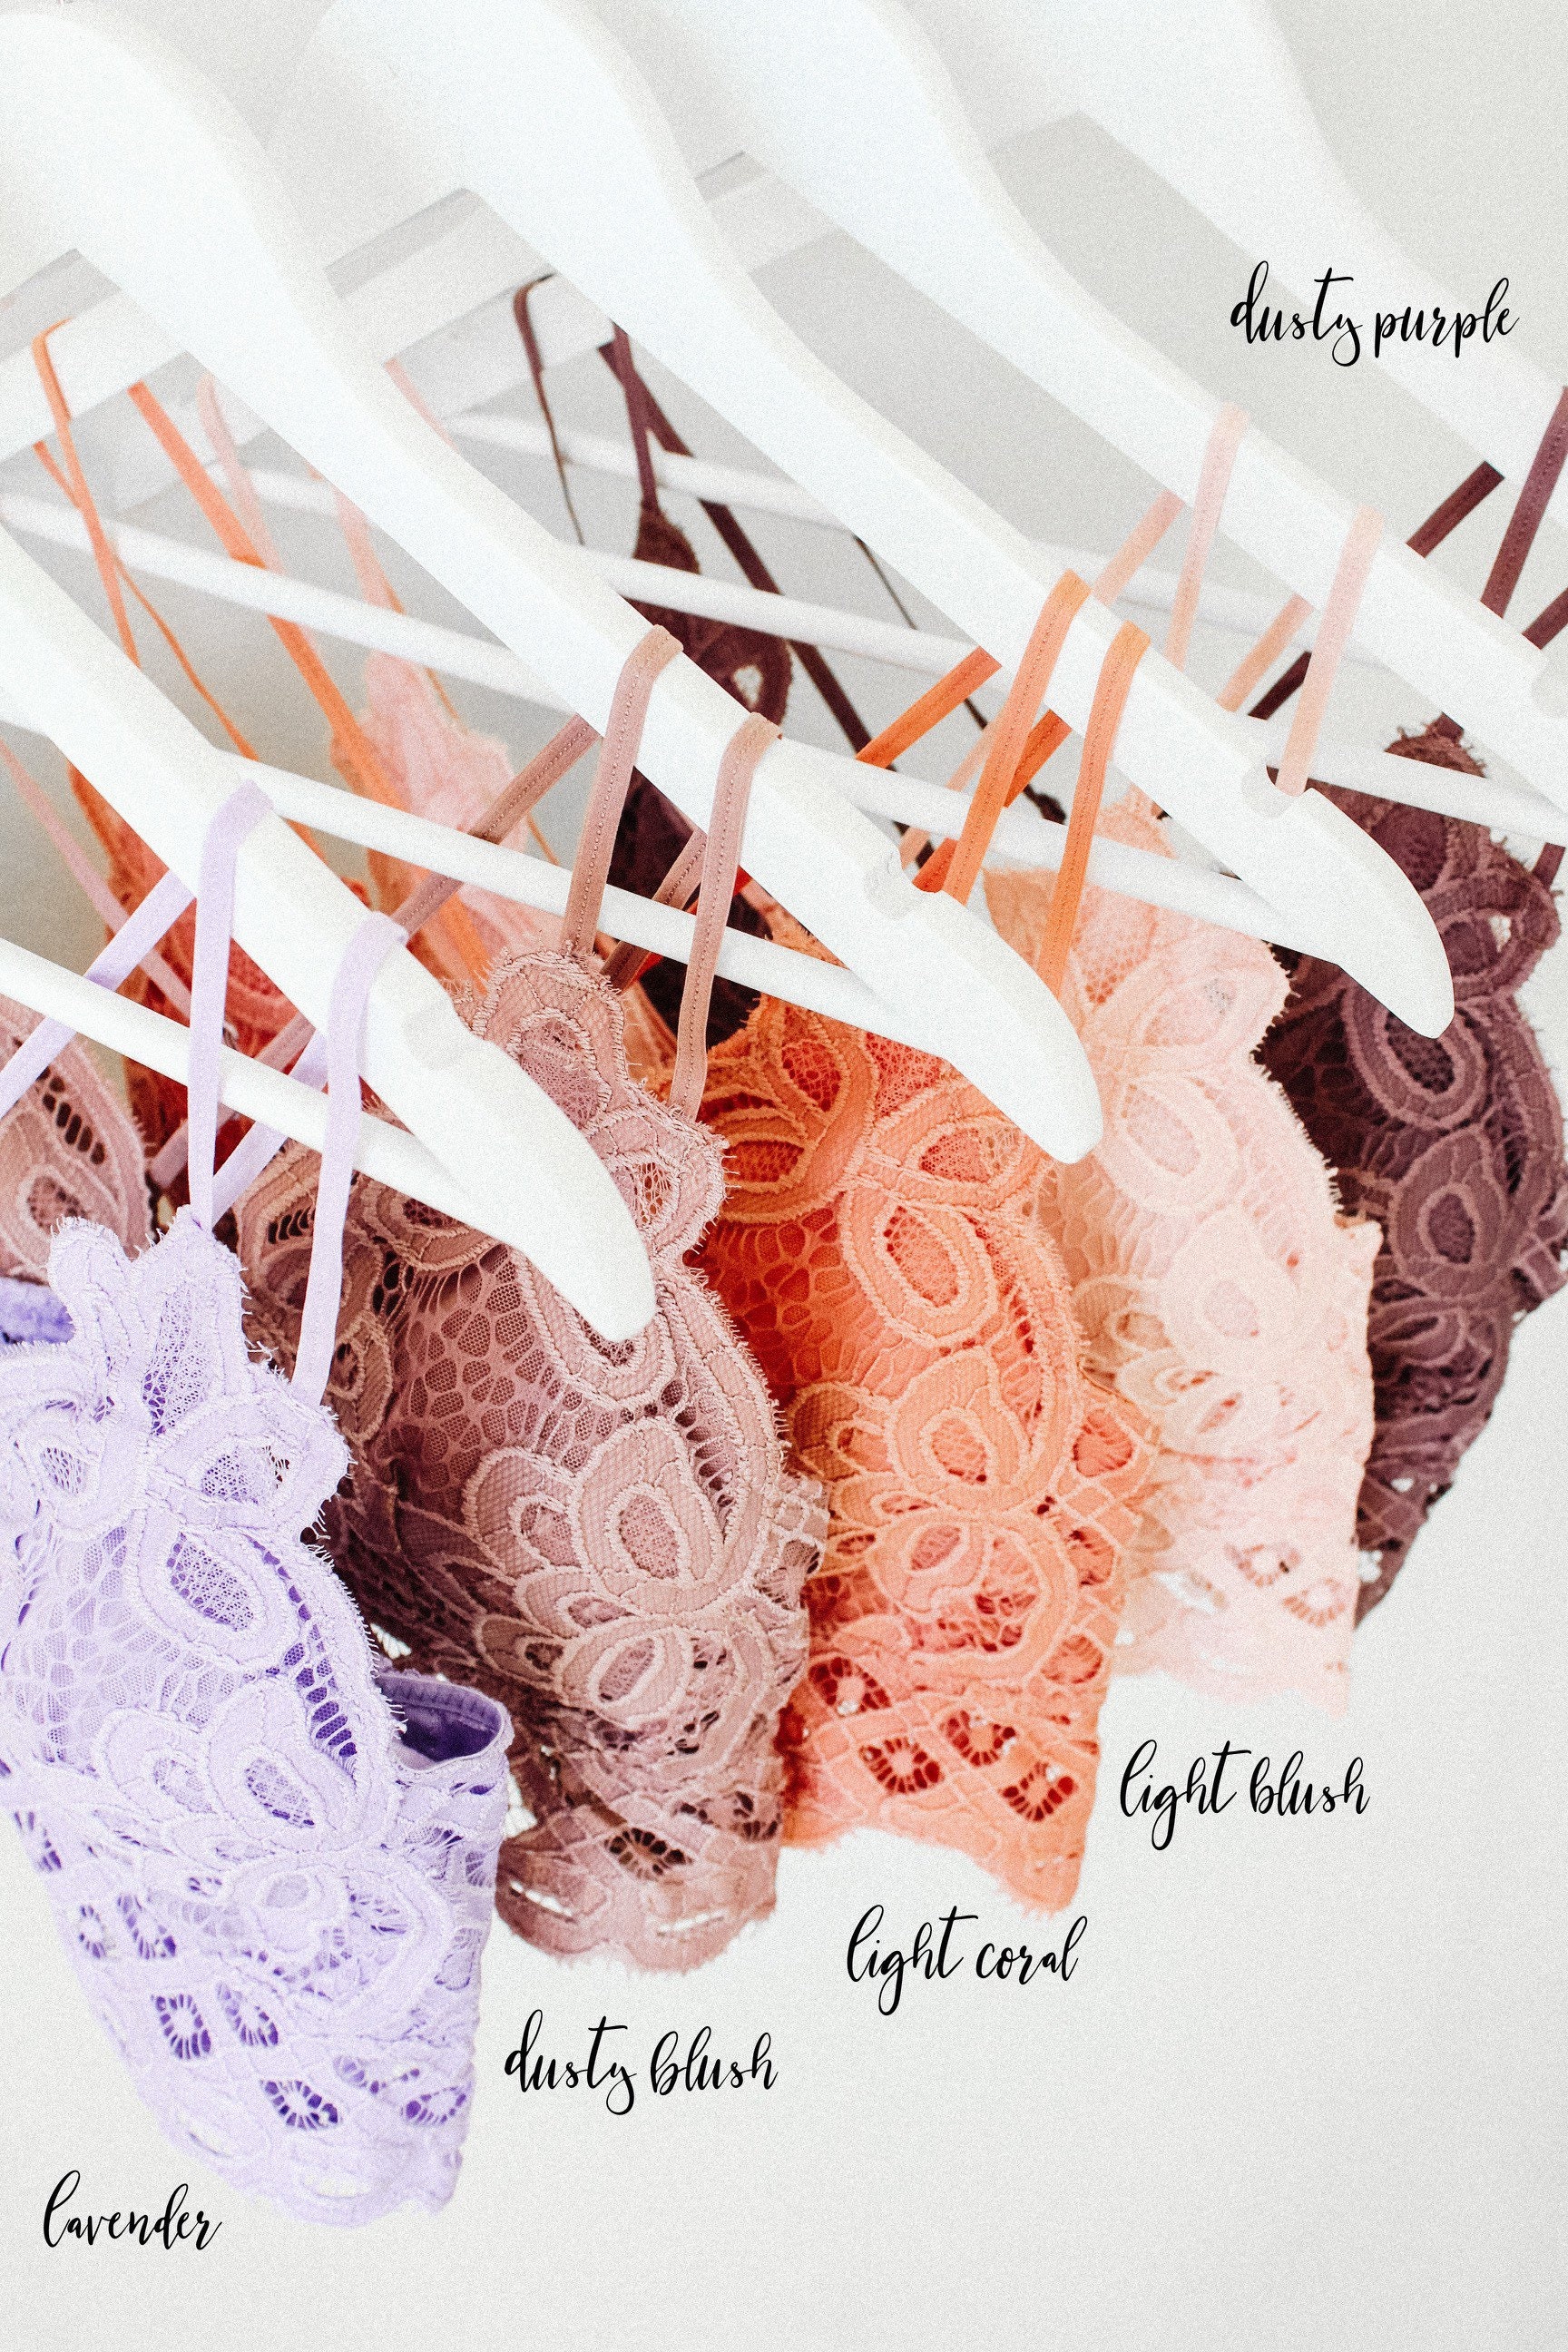 Plus Size Crochet Lace Bralette – Urspirit Shop